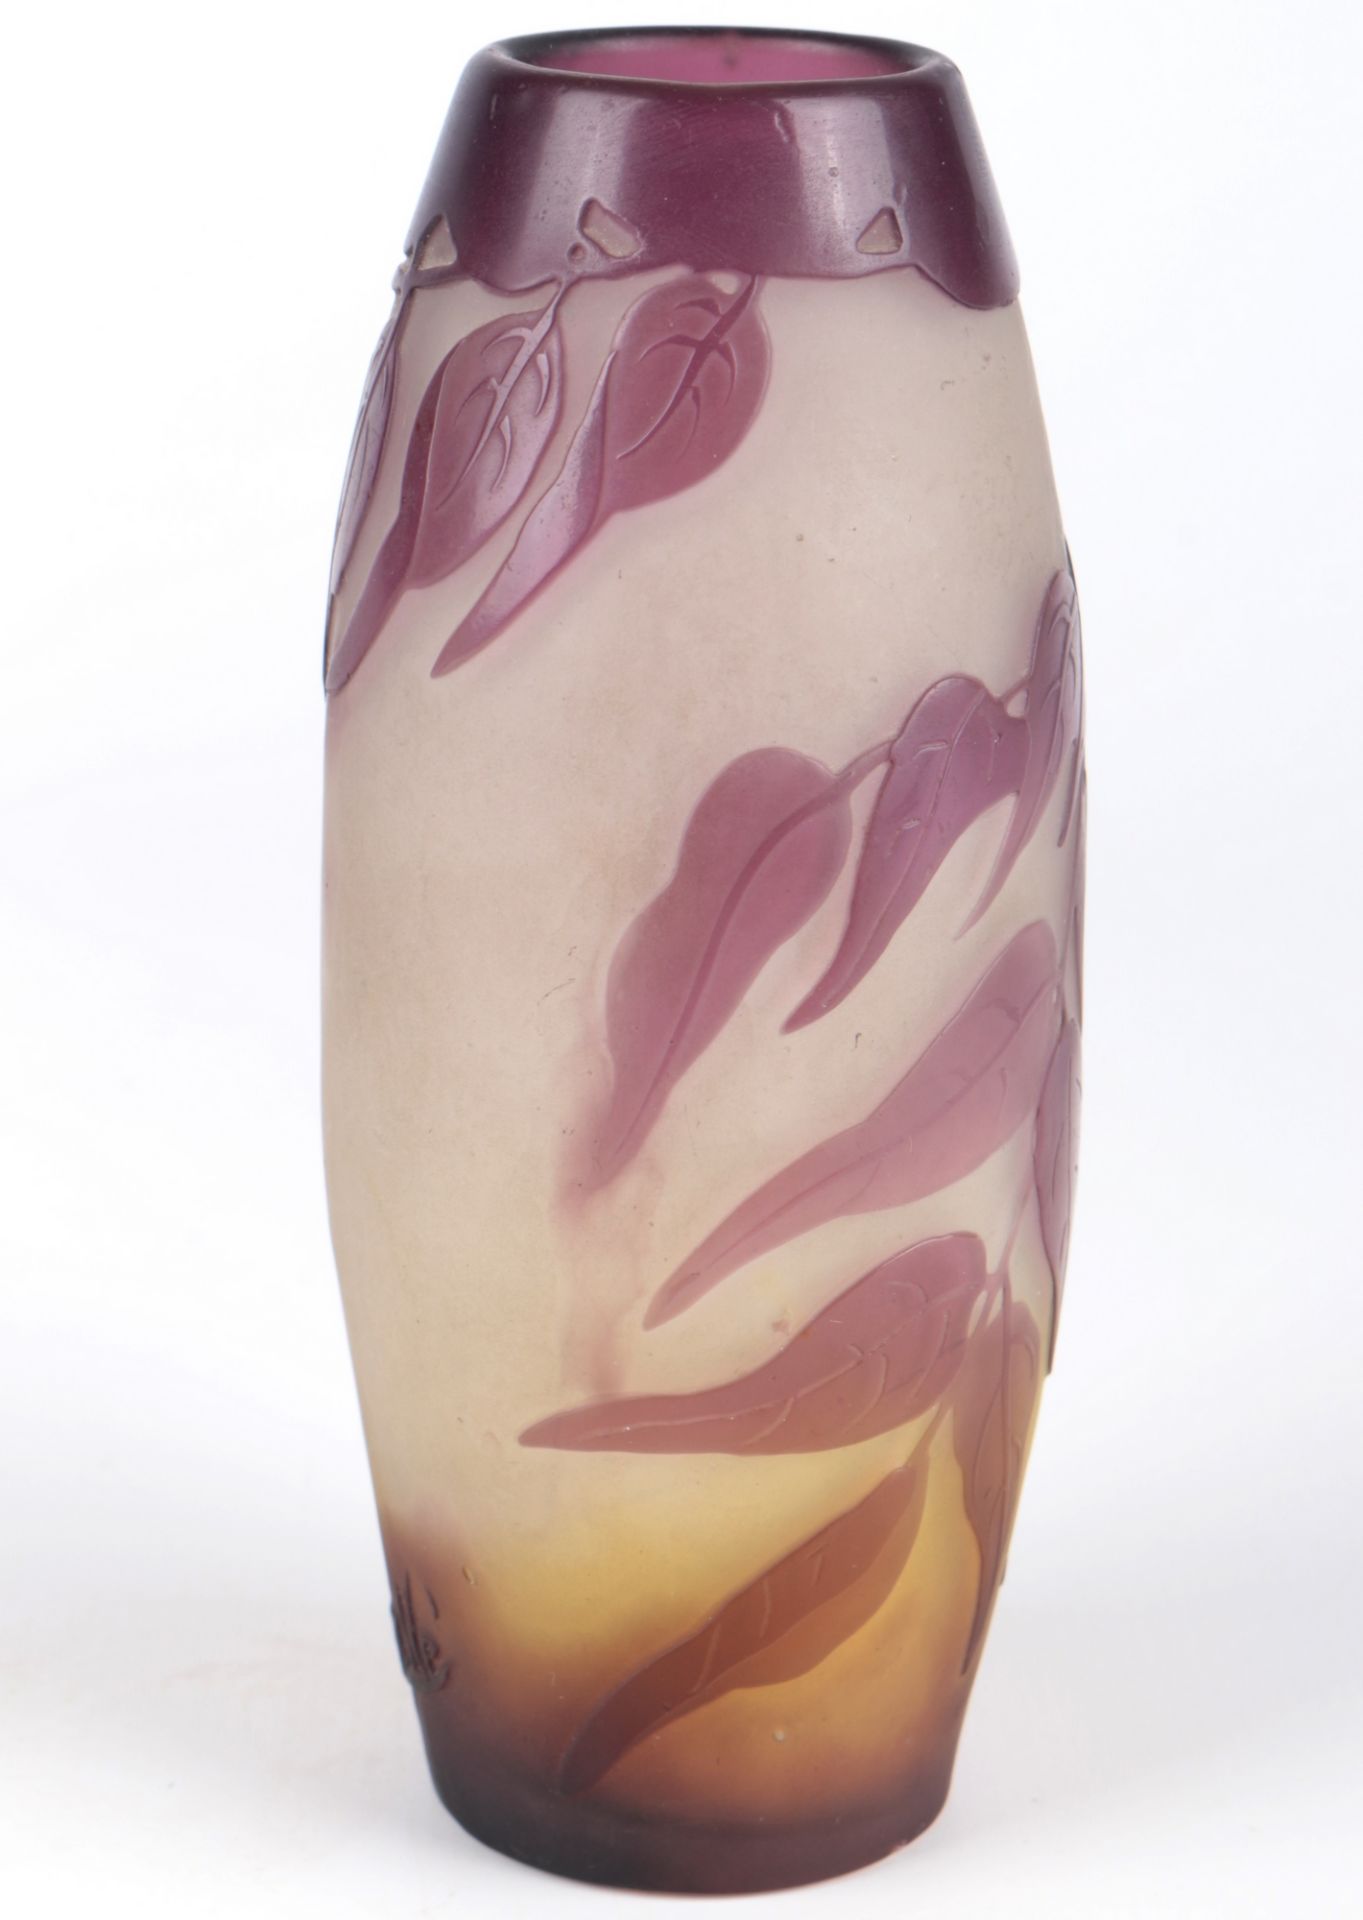 Emile Galle (1846-1904) Jugendstil Vase, french art nouveau glass vase, - Bild 3 aus 6